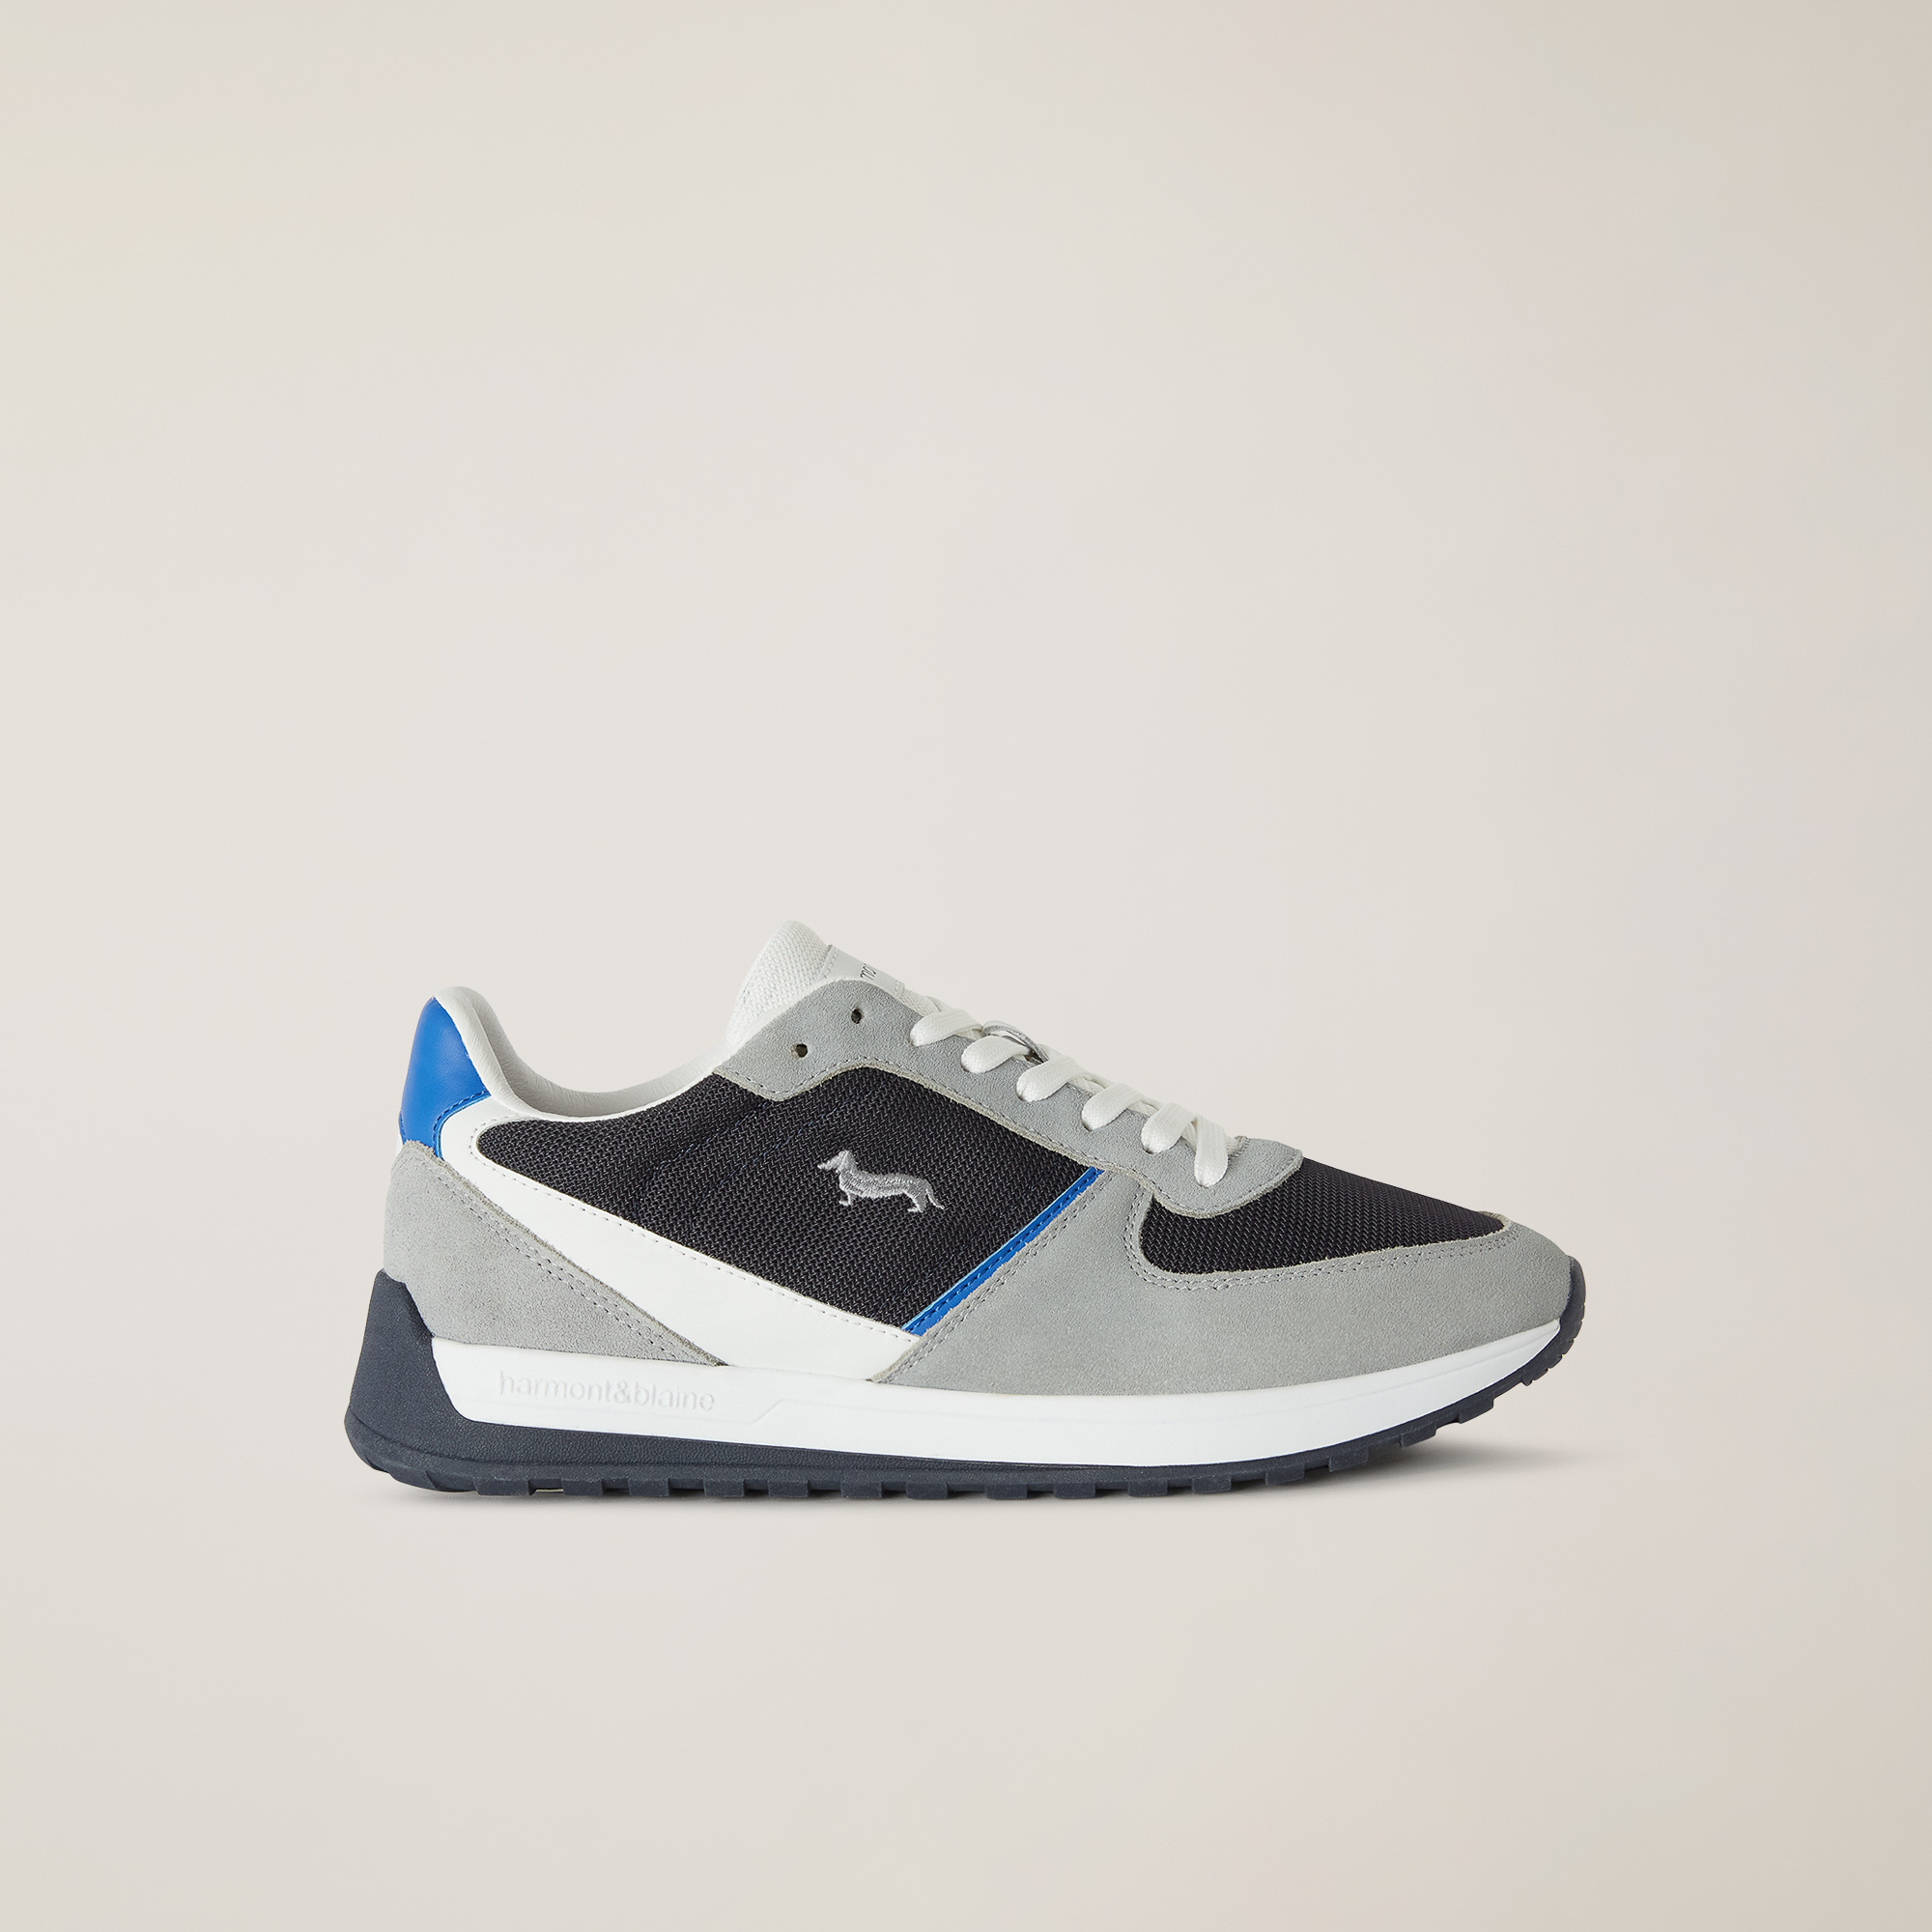 Sneaker mit zweifarbiger Sohle, Grau/Blau, large image number 0